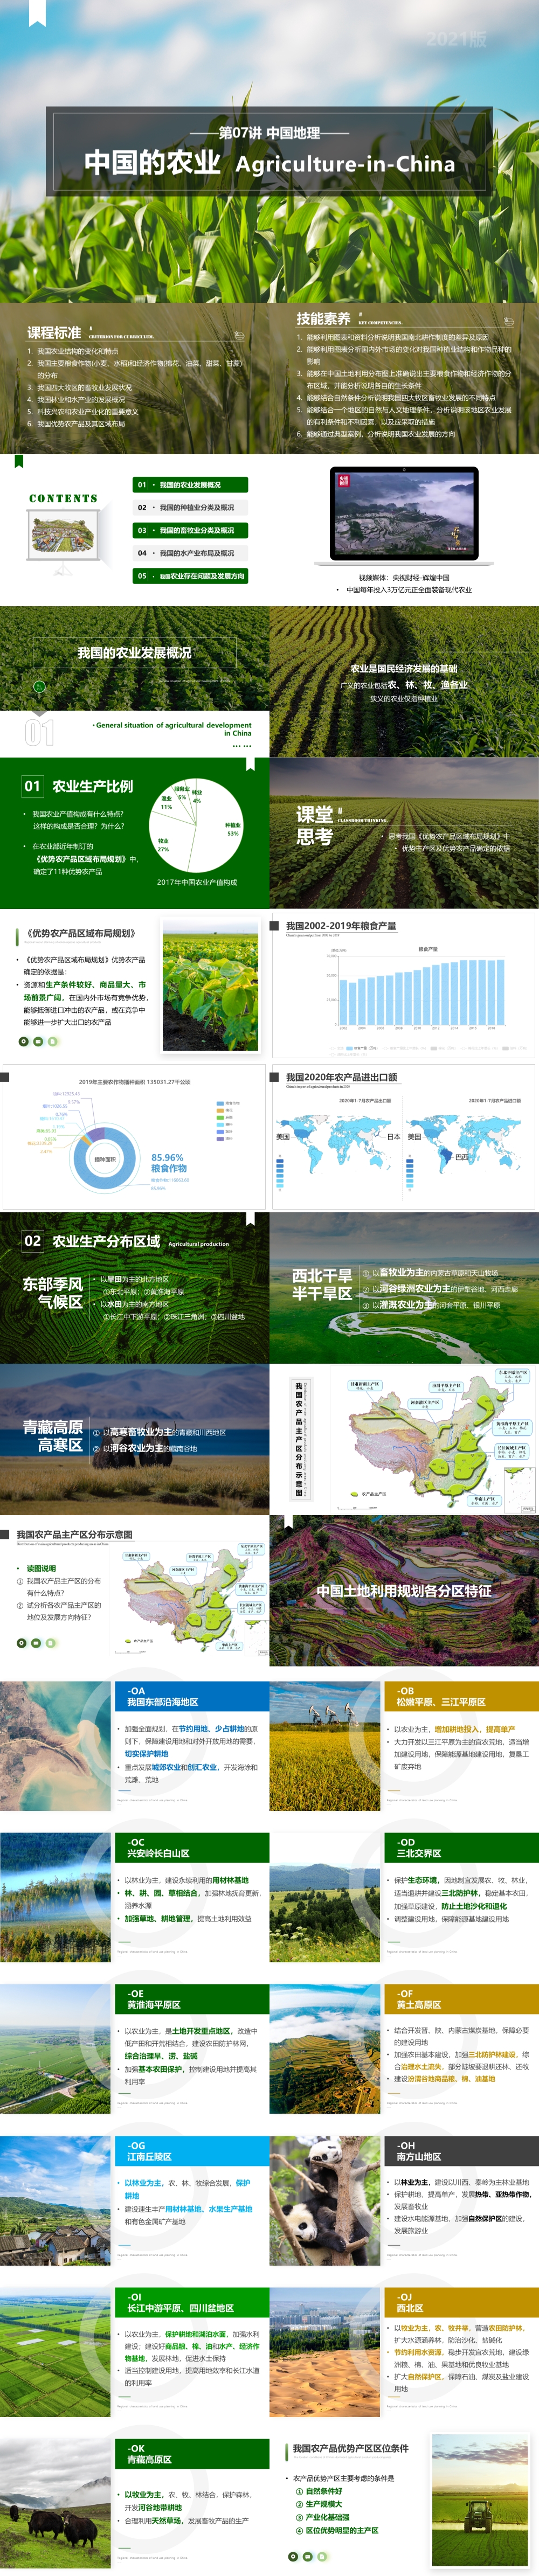 第07讲 中国的农业 [2021版]-1000px.jpg